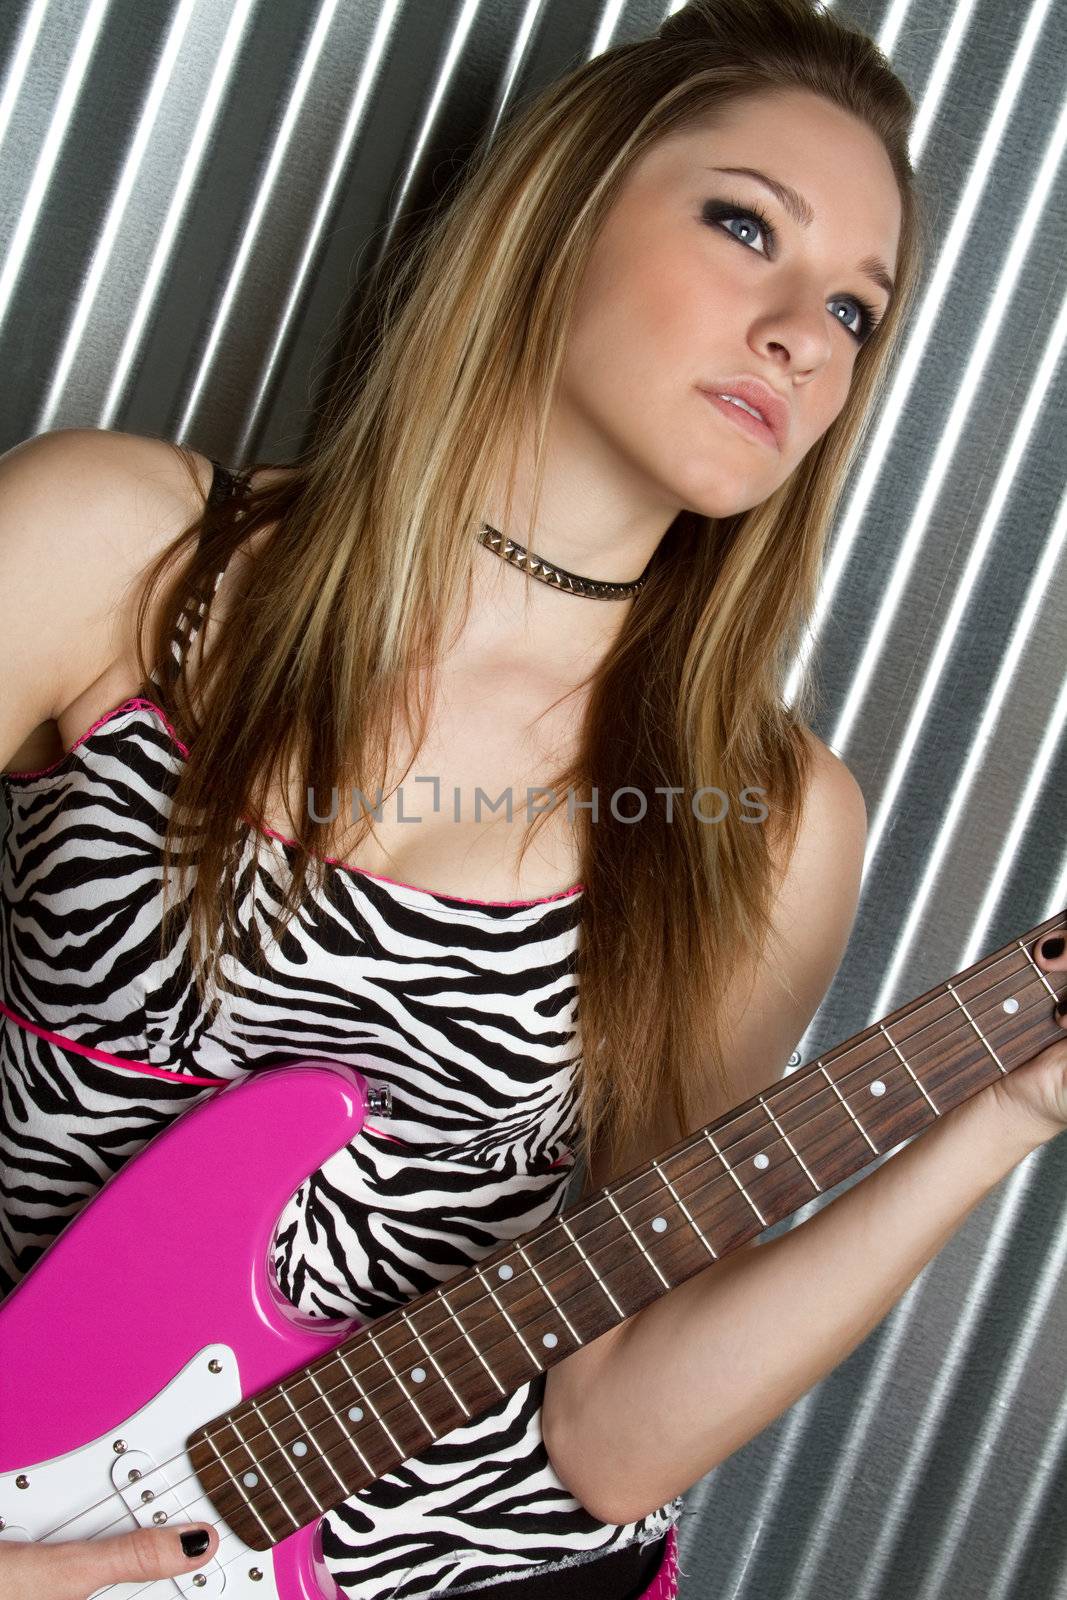 Guitar Girl by keeweeboy